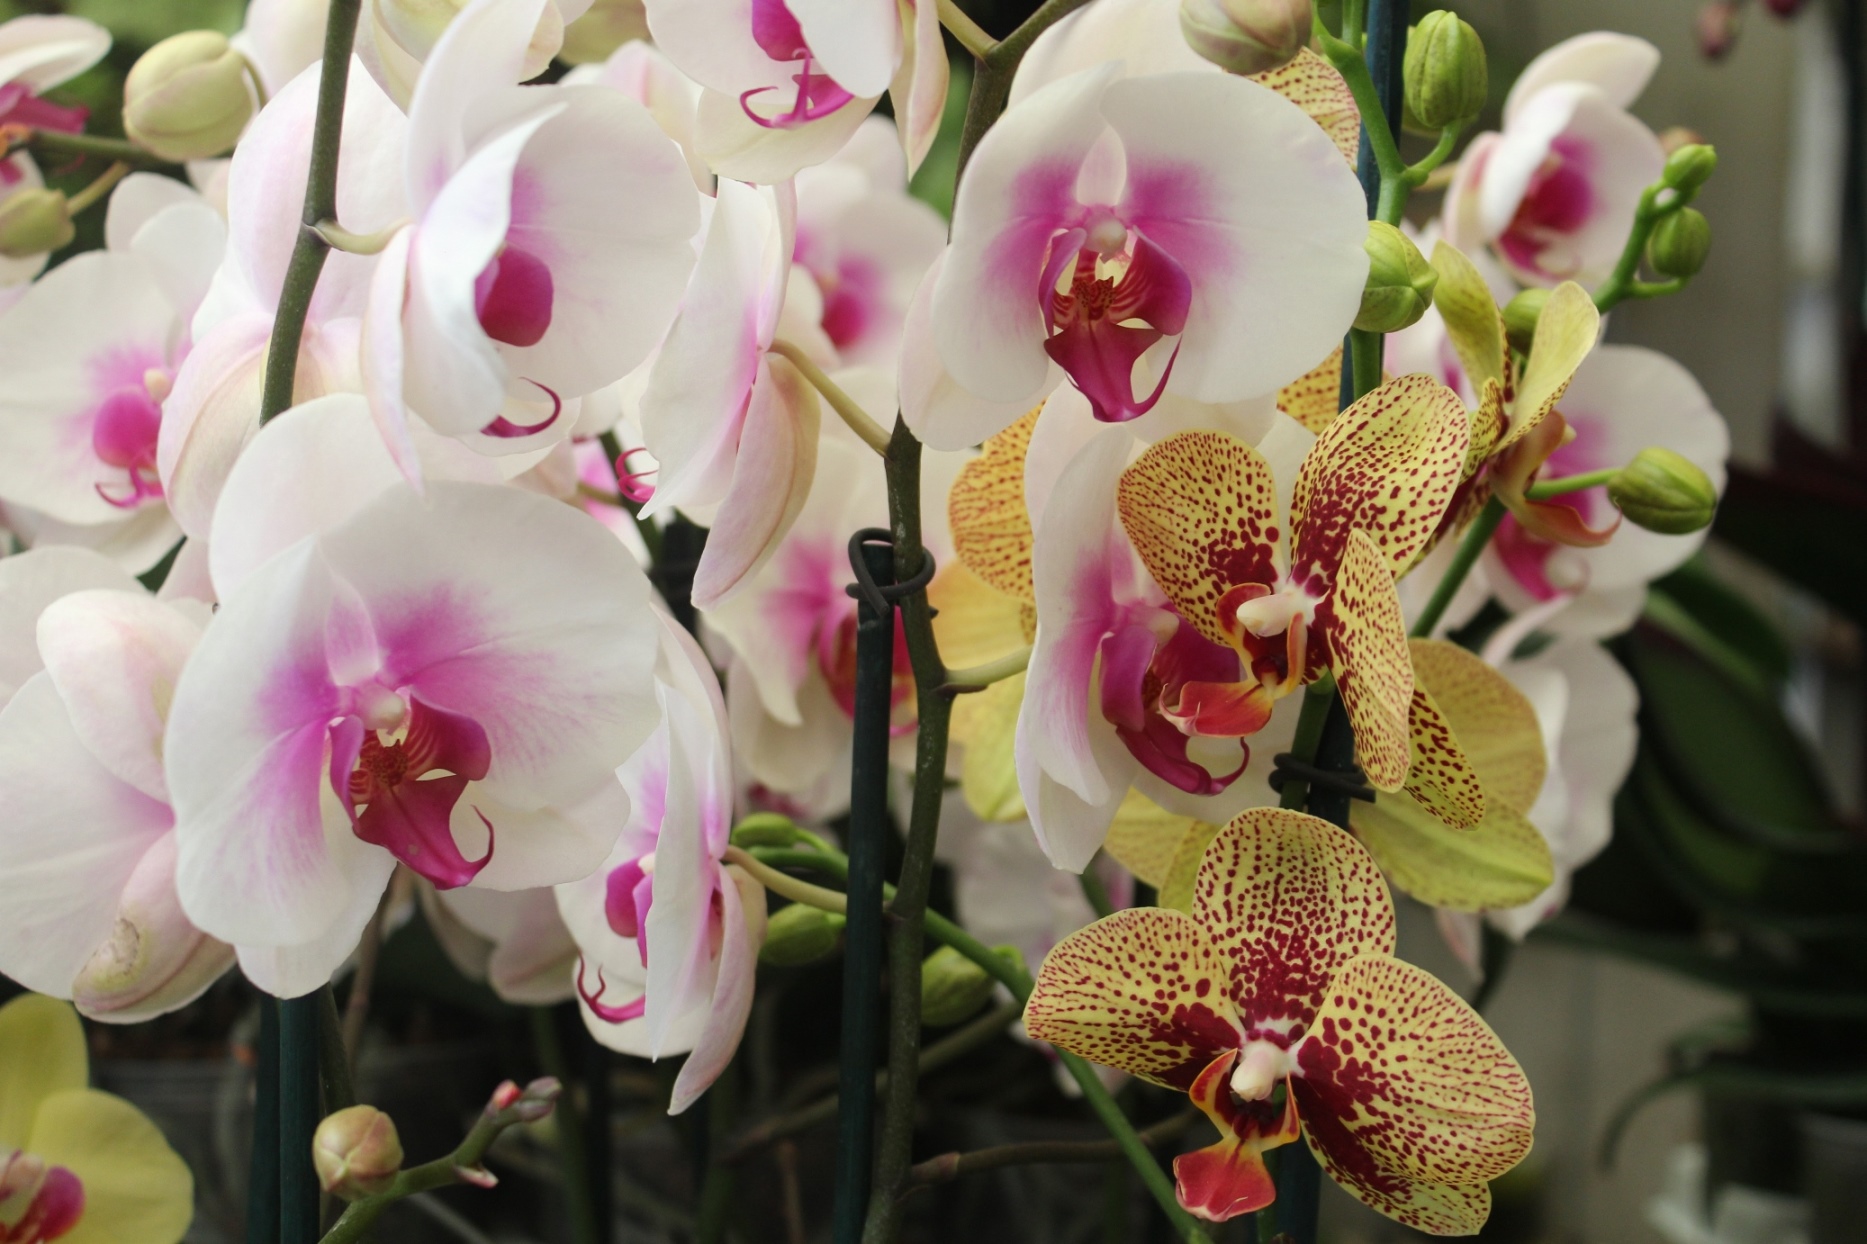 La “Naturaleza deslumbrante” será exhibida  en la XLIV Exposición Nacional de Orquídeas